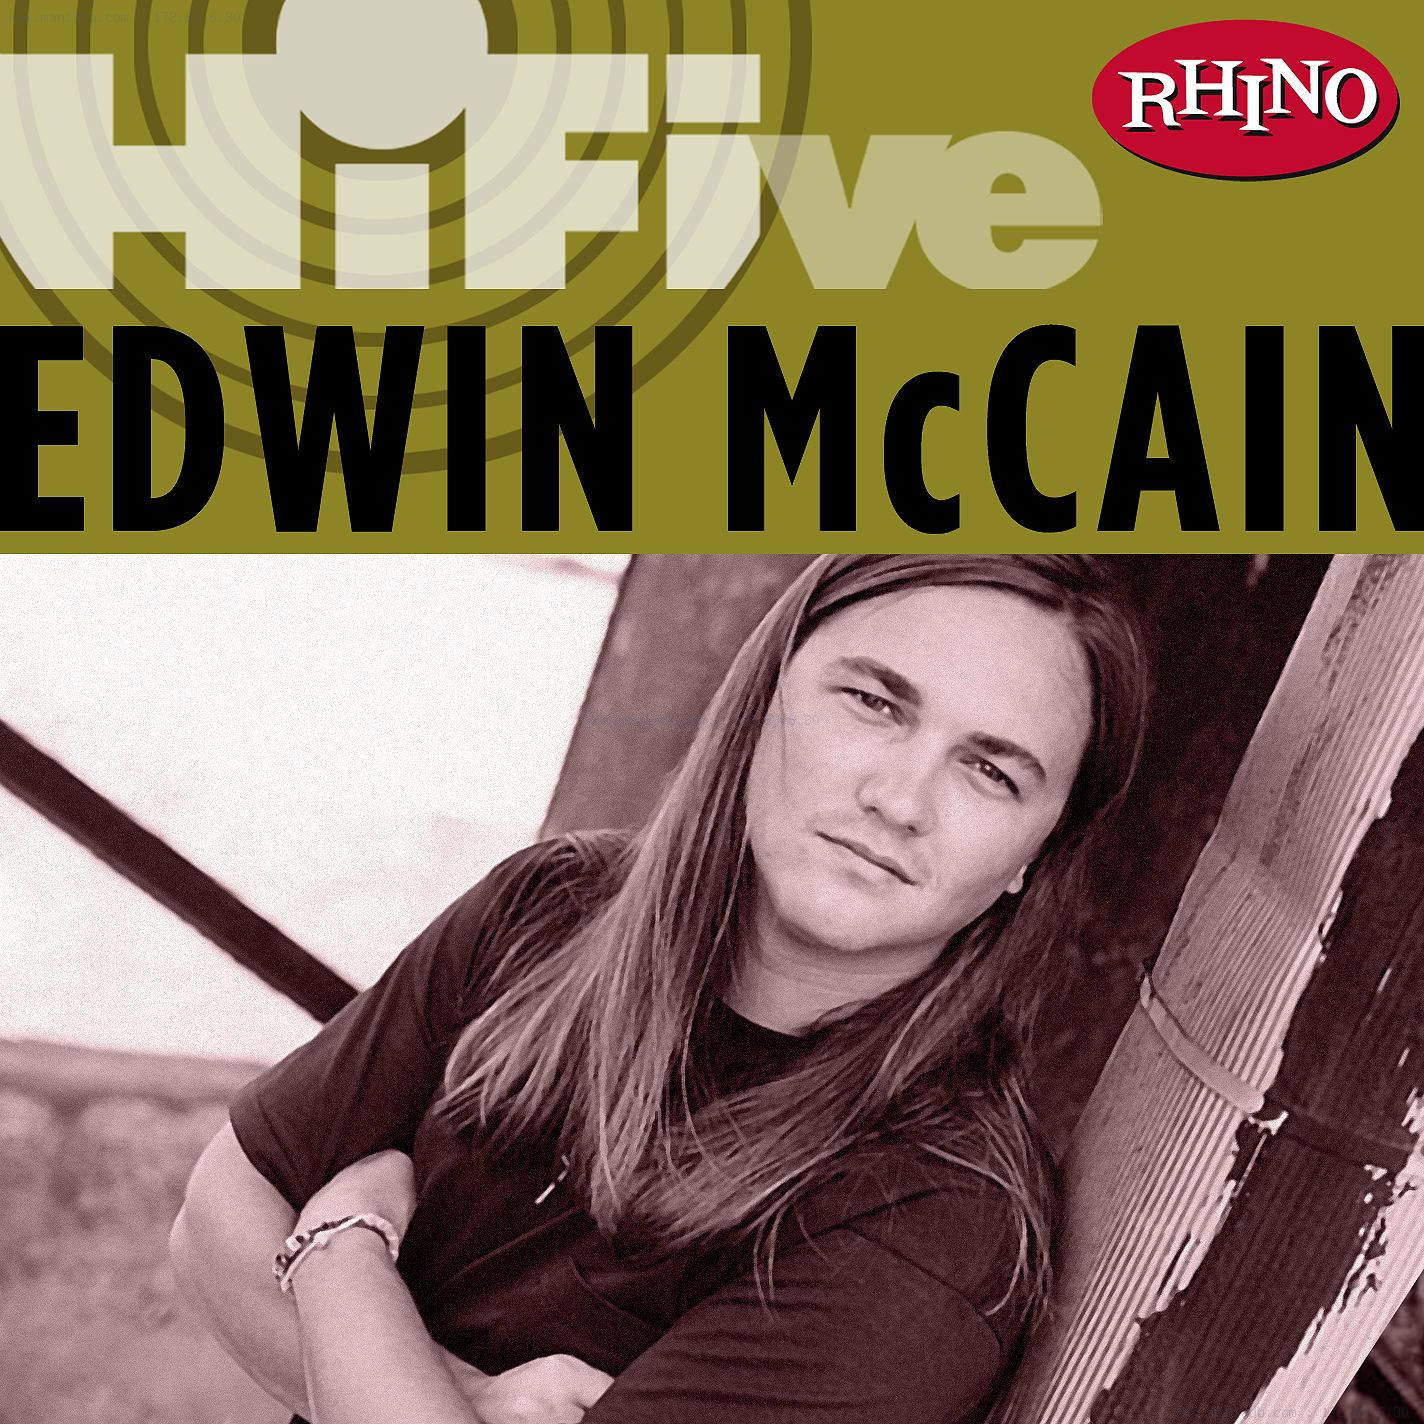 Edwin Mccain - Rhino Hi-Five: Edwin McCain (2006) .